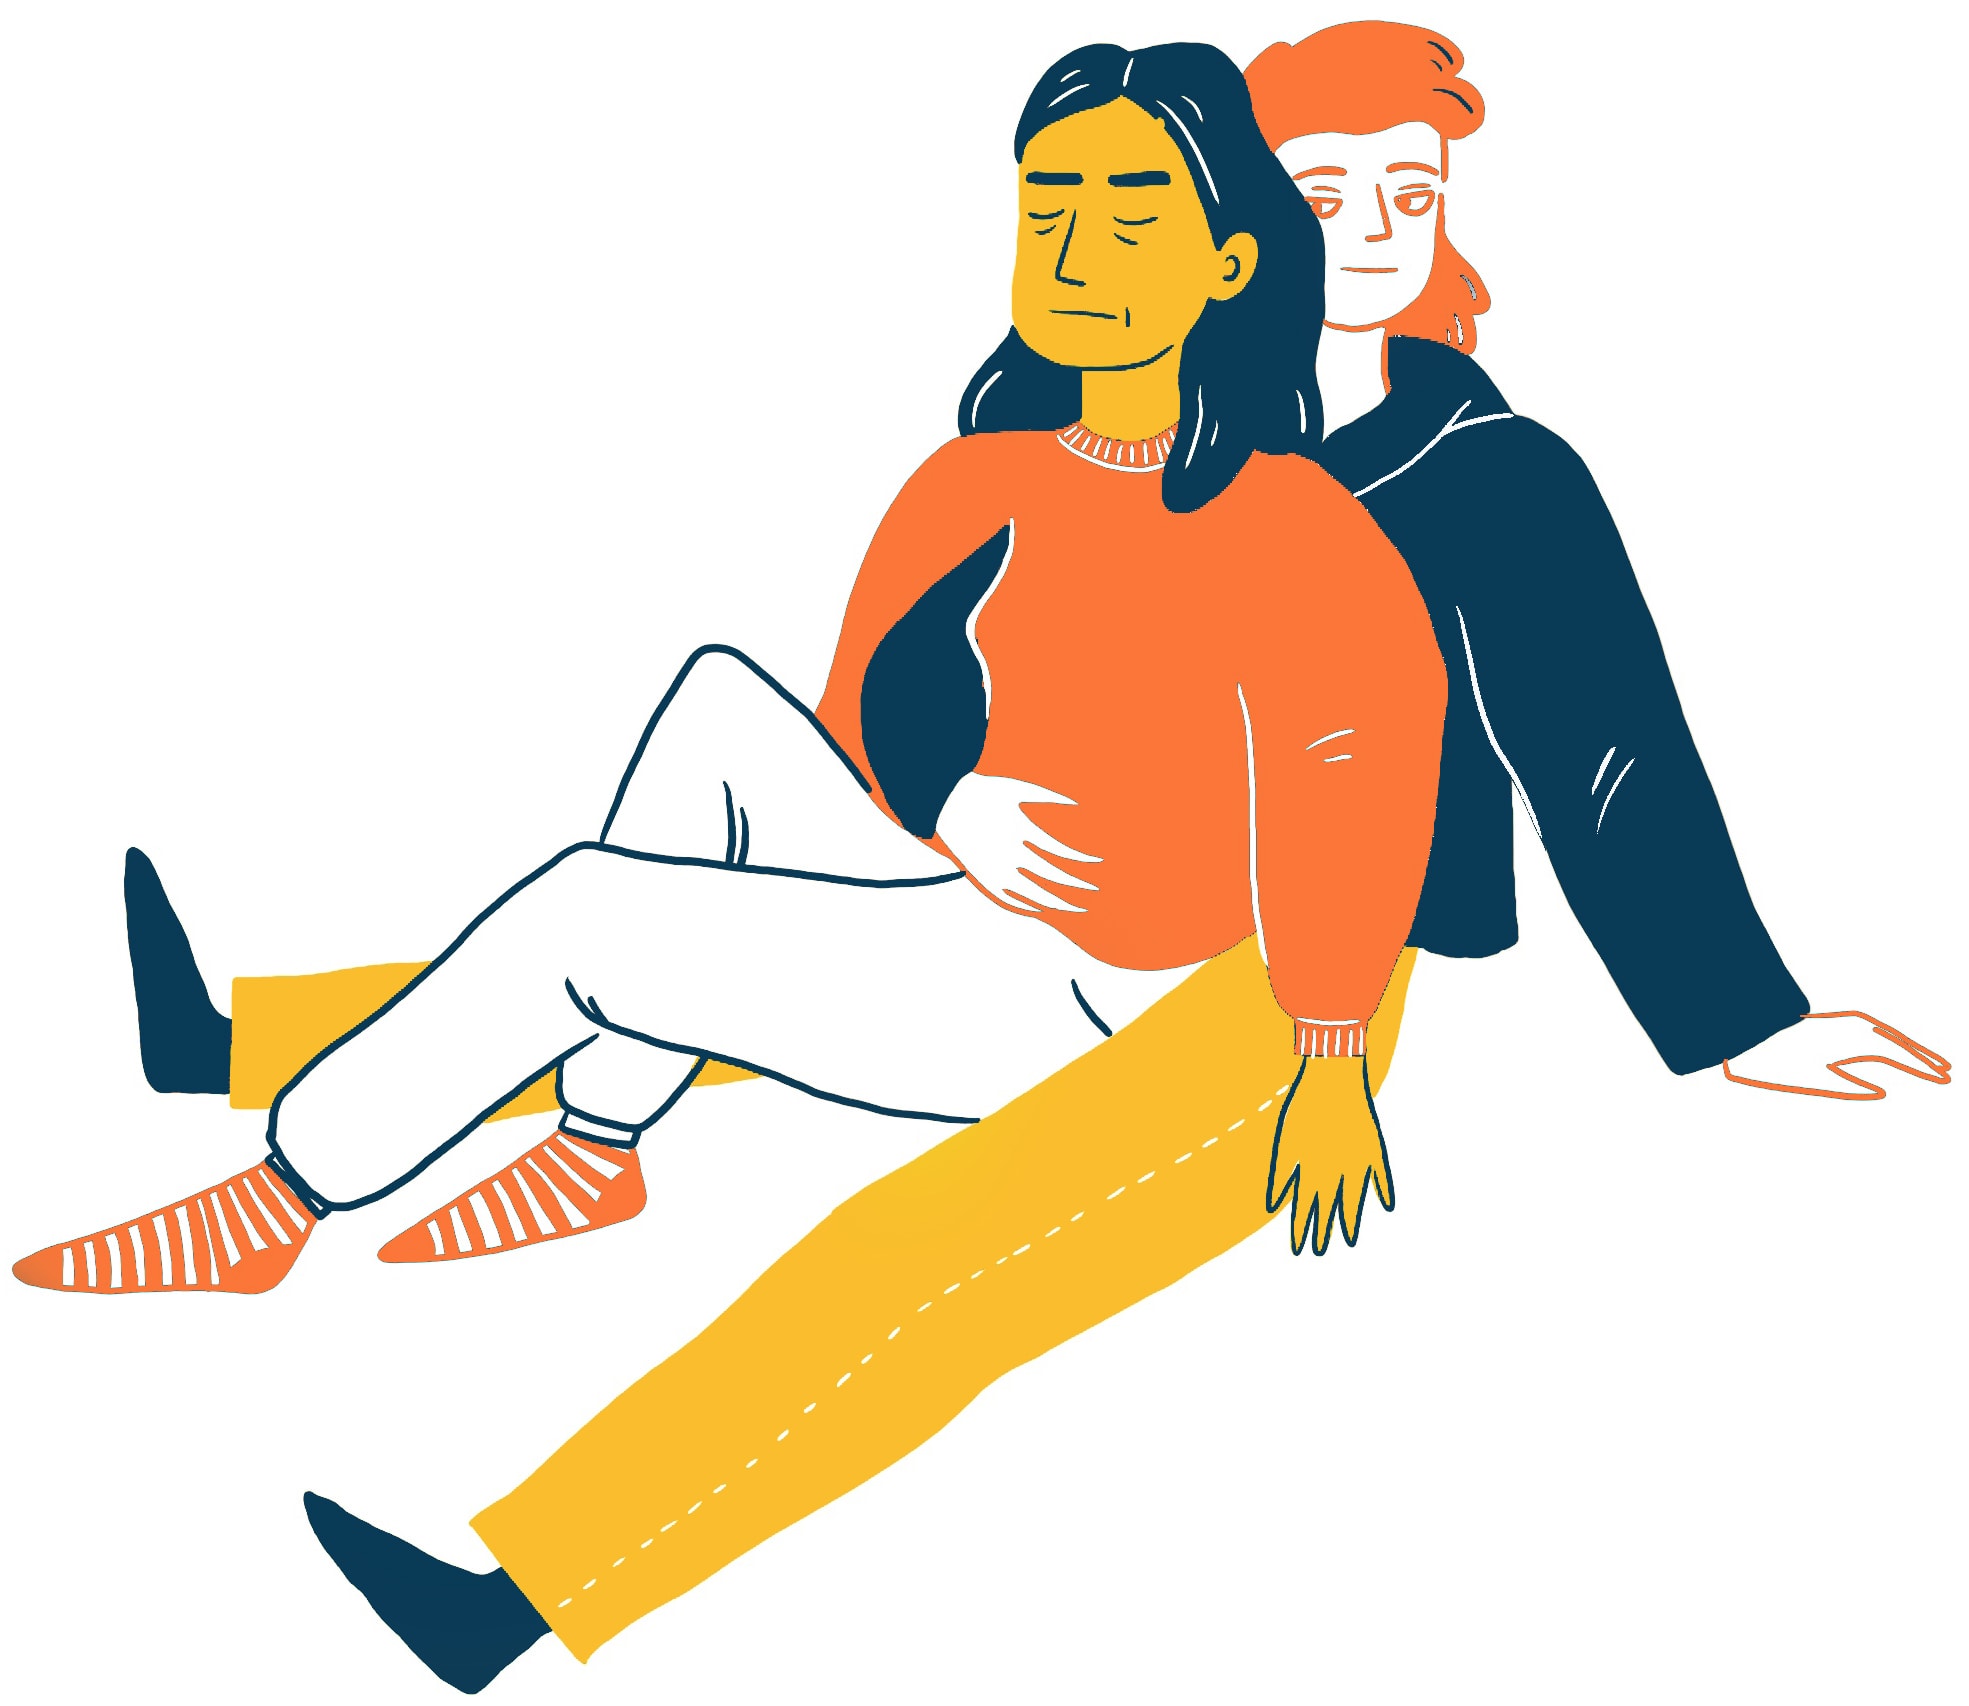 Kangarooing: Abbildung von zwei Personen, die zusammensitzen. Eine Person mit langen Haaren, die einen orangefarbenen Pullover, weiße Hosen und gestreifte Socken trägt, lehnt sich mit geschlossenen Augen zurück. Die andere Person mit kurzen Haaren, die einen dunklen Pullover und Hosen trägt, sitzt hinter ihr und stützt ihren Rücken.